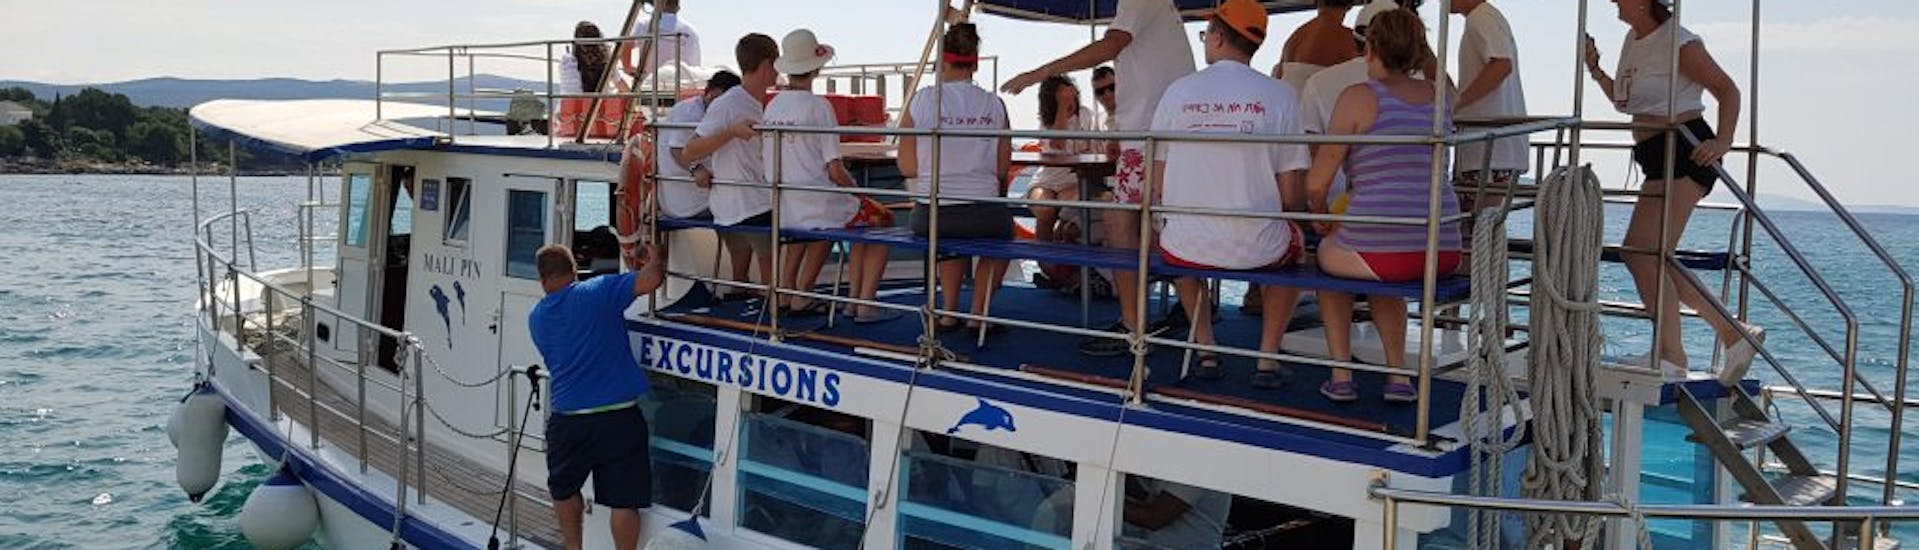 Groep mensen die genieten van de boottocht naar Kormat, de Blauwe Grot en het Golden Bay strand met snorkelen met Kapetan Nemo & Mali Pin Krk.